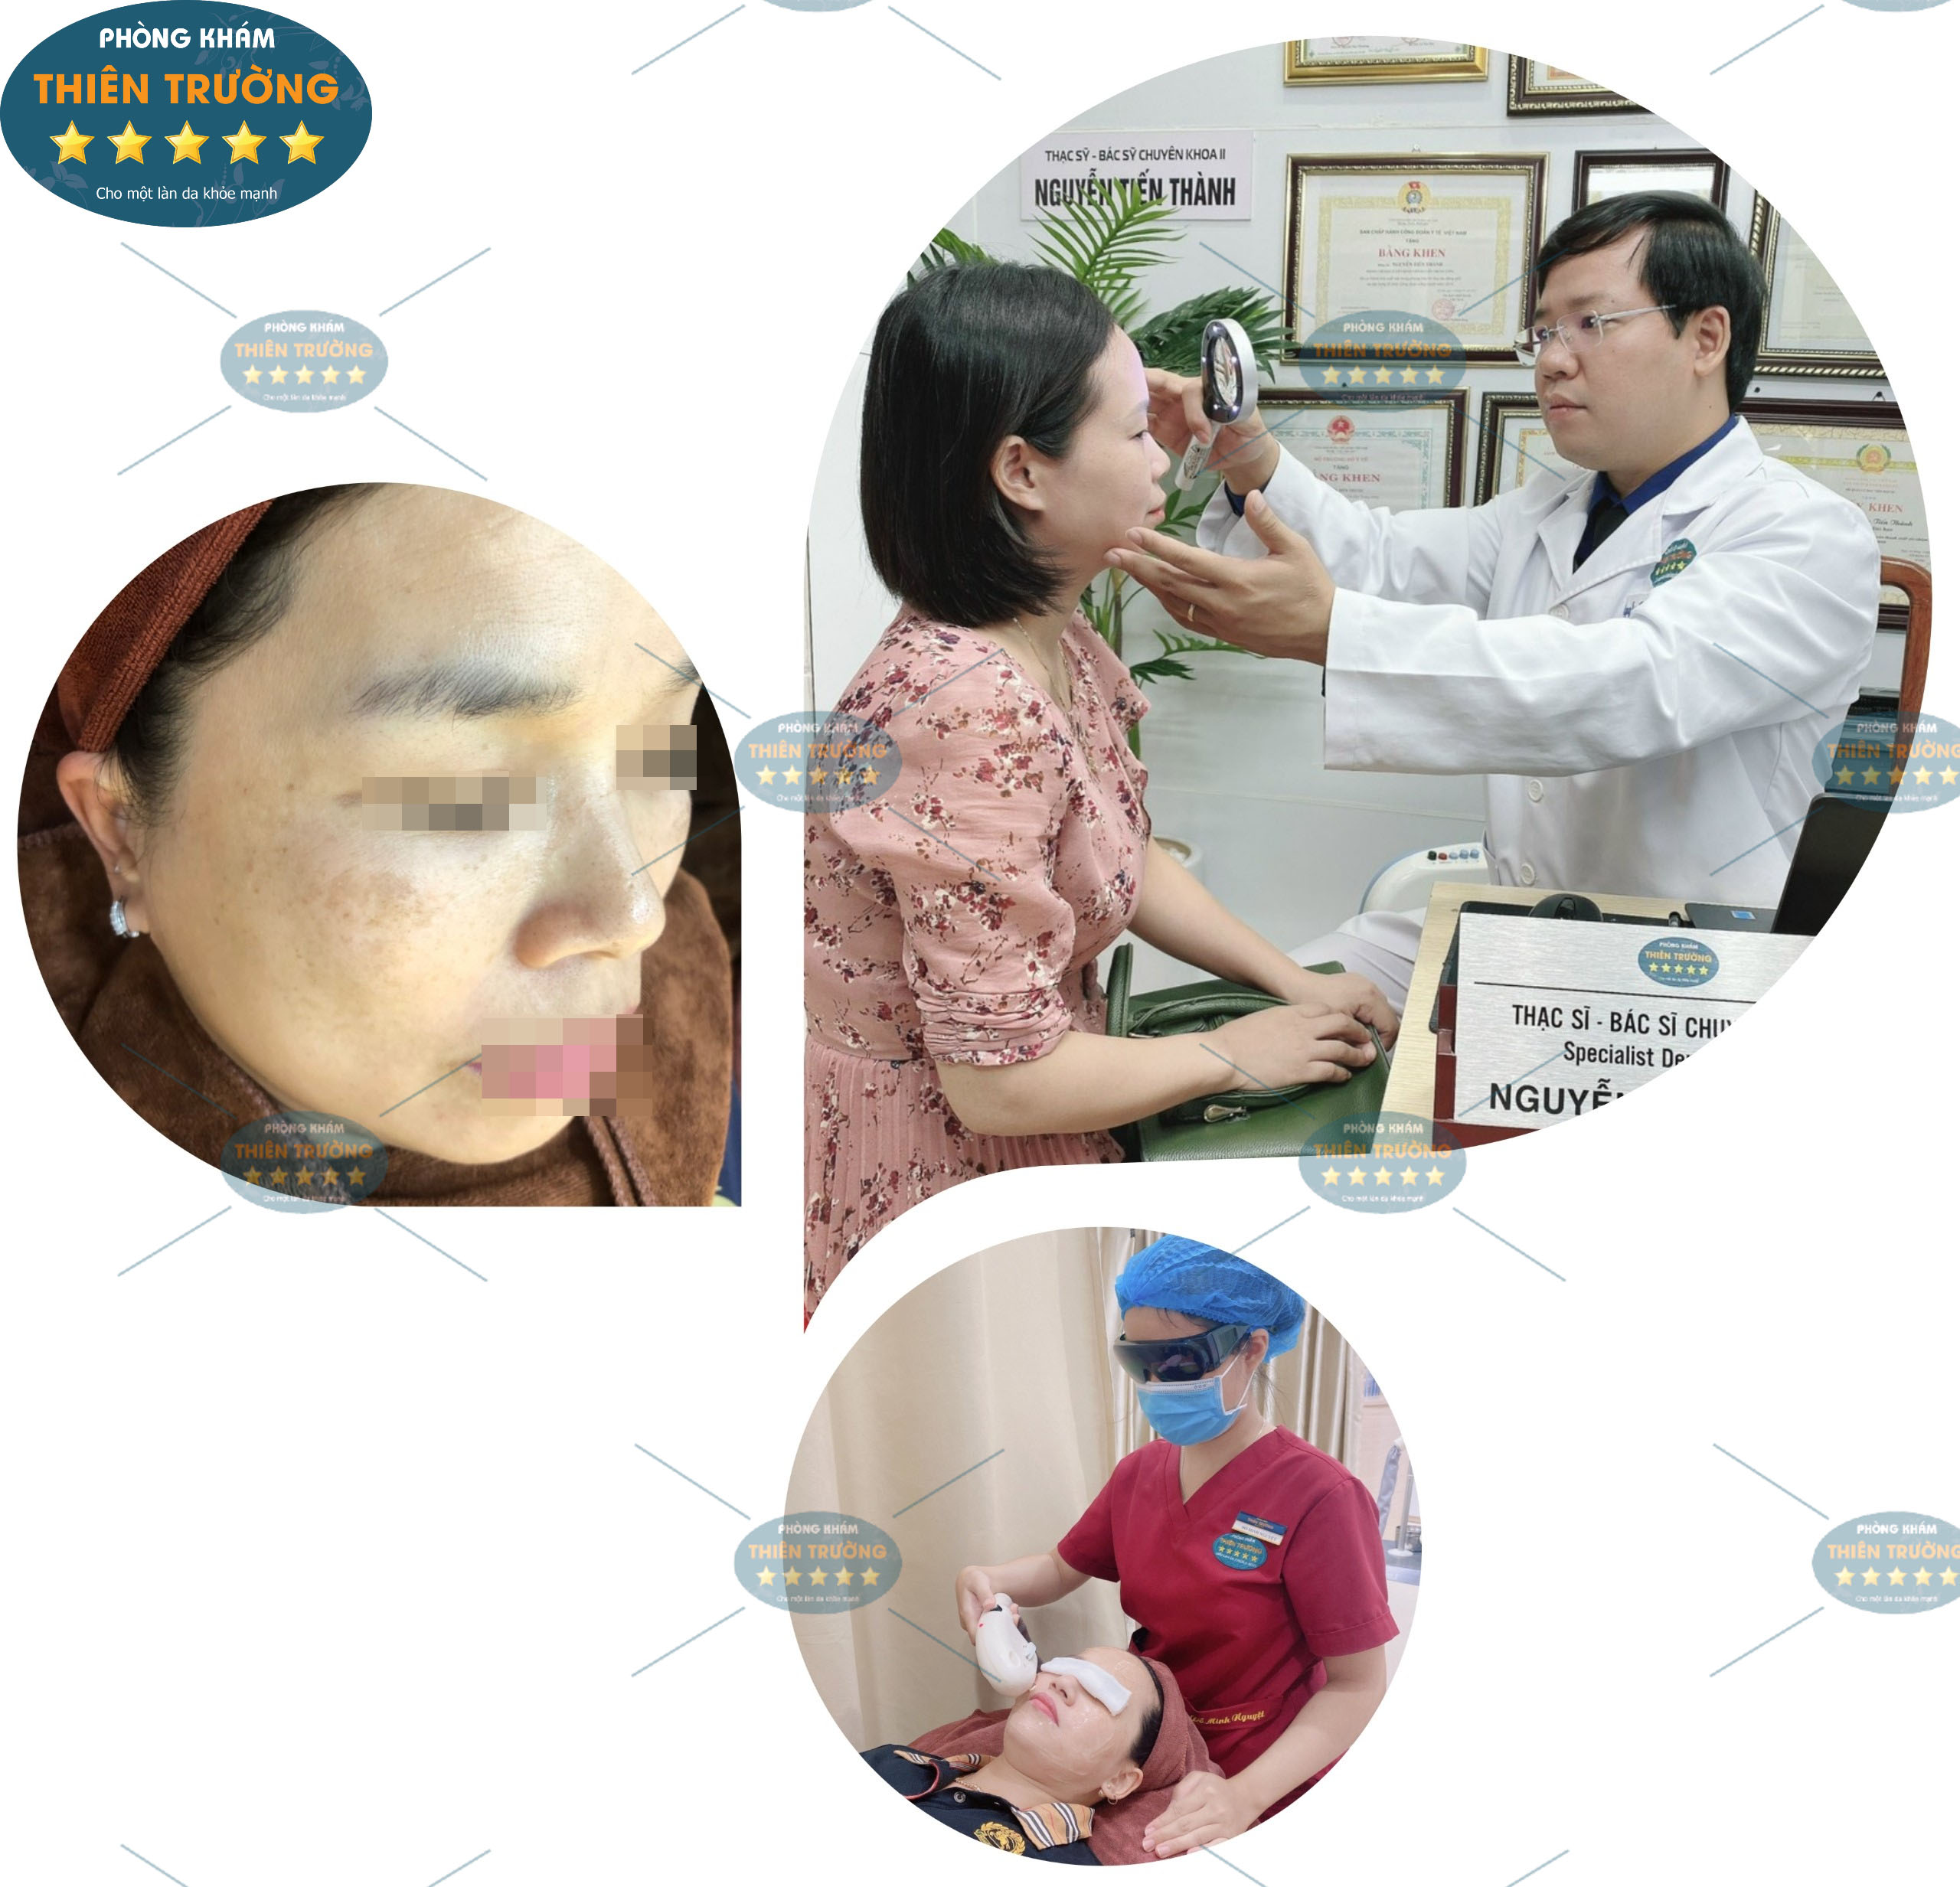 Hình ảnh: Thạc sĩ- Bác sĩ CK II Nguyễn Tiến Thành thăm khám cho khách hàng tại phòng khám Da liễu thẩm mỹ Thiên Trường.